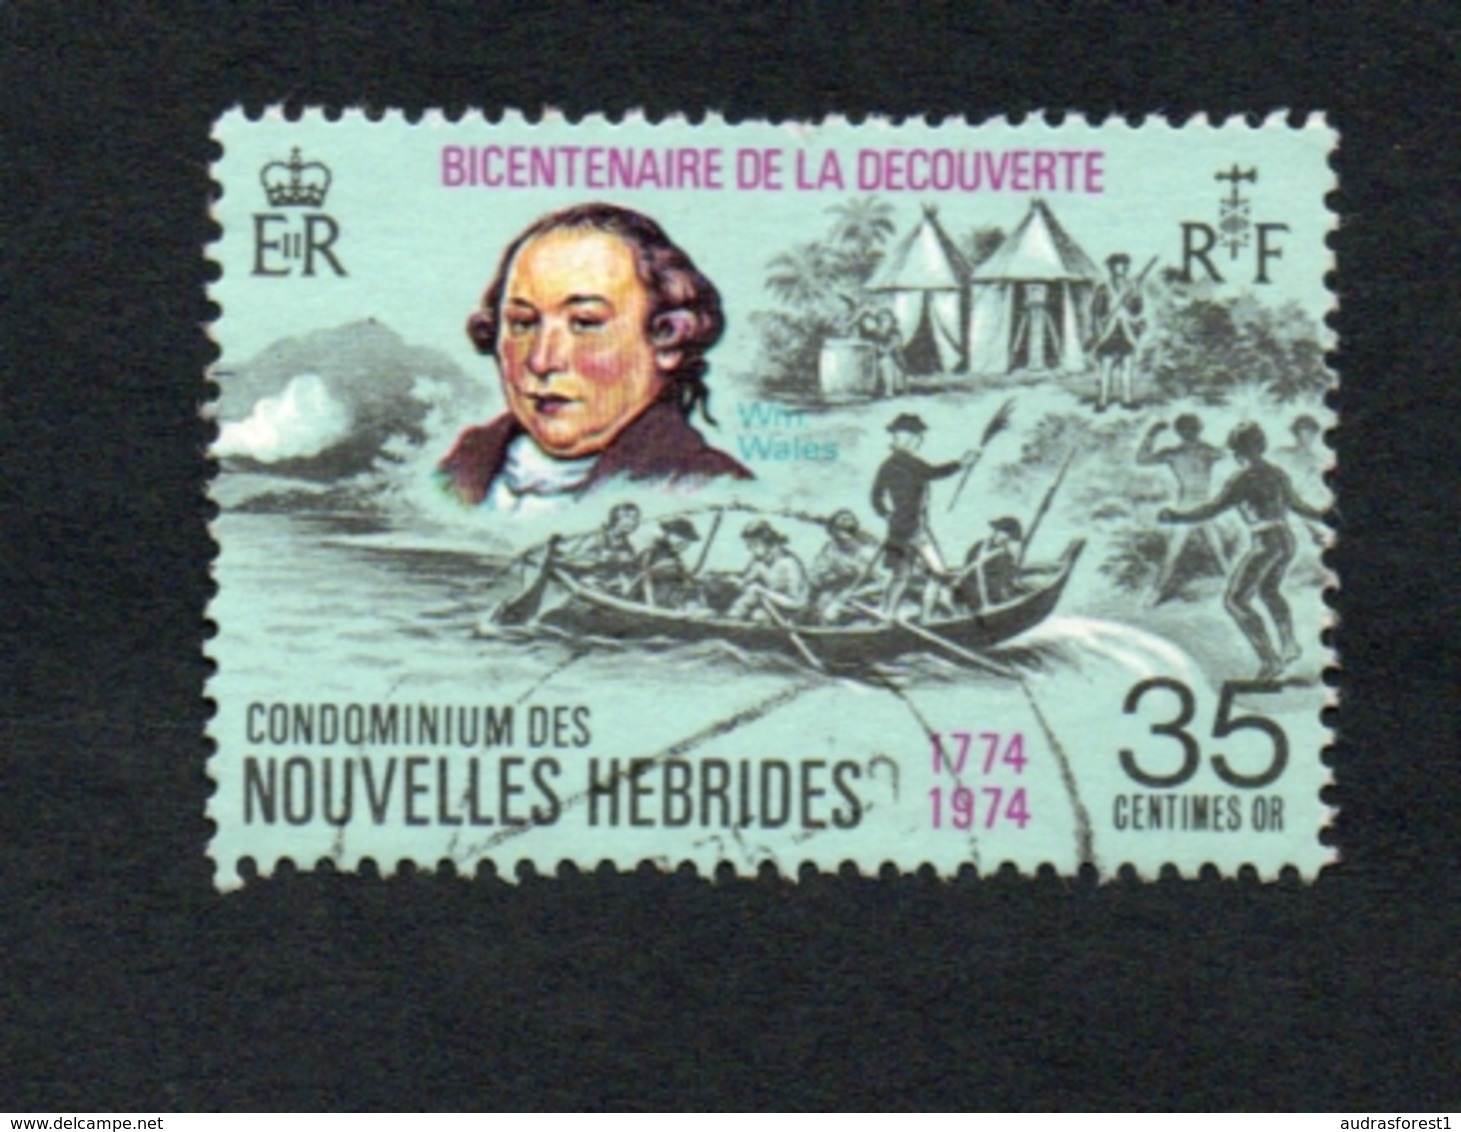 1974 DECOUVERTE  Nouvelles Hebrides 35c  Yvert Tellier No. 395 Timbre Usagee, Sans Charniere Par Monsieur WALES - Oblitérés